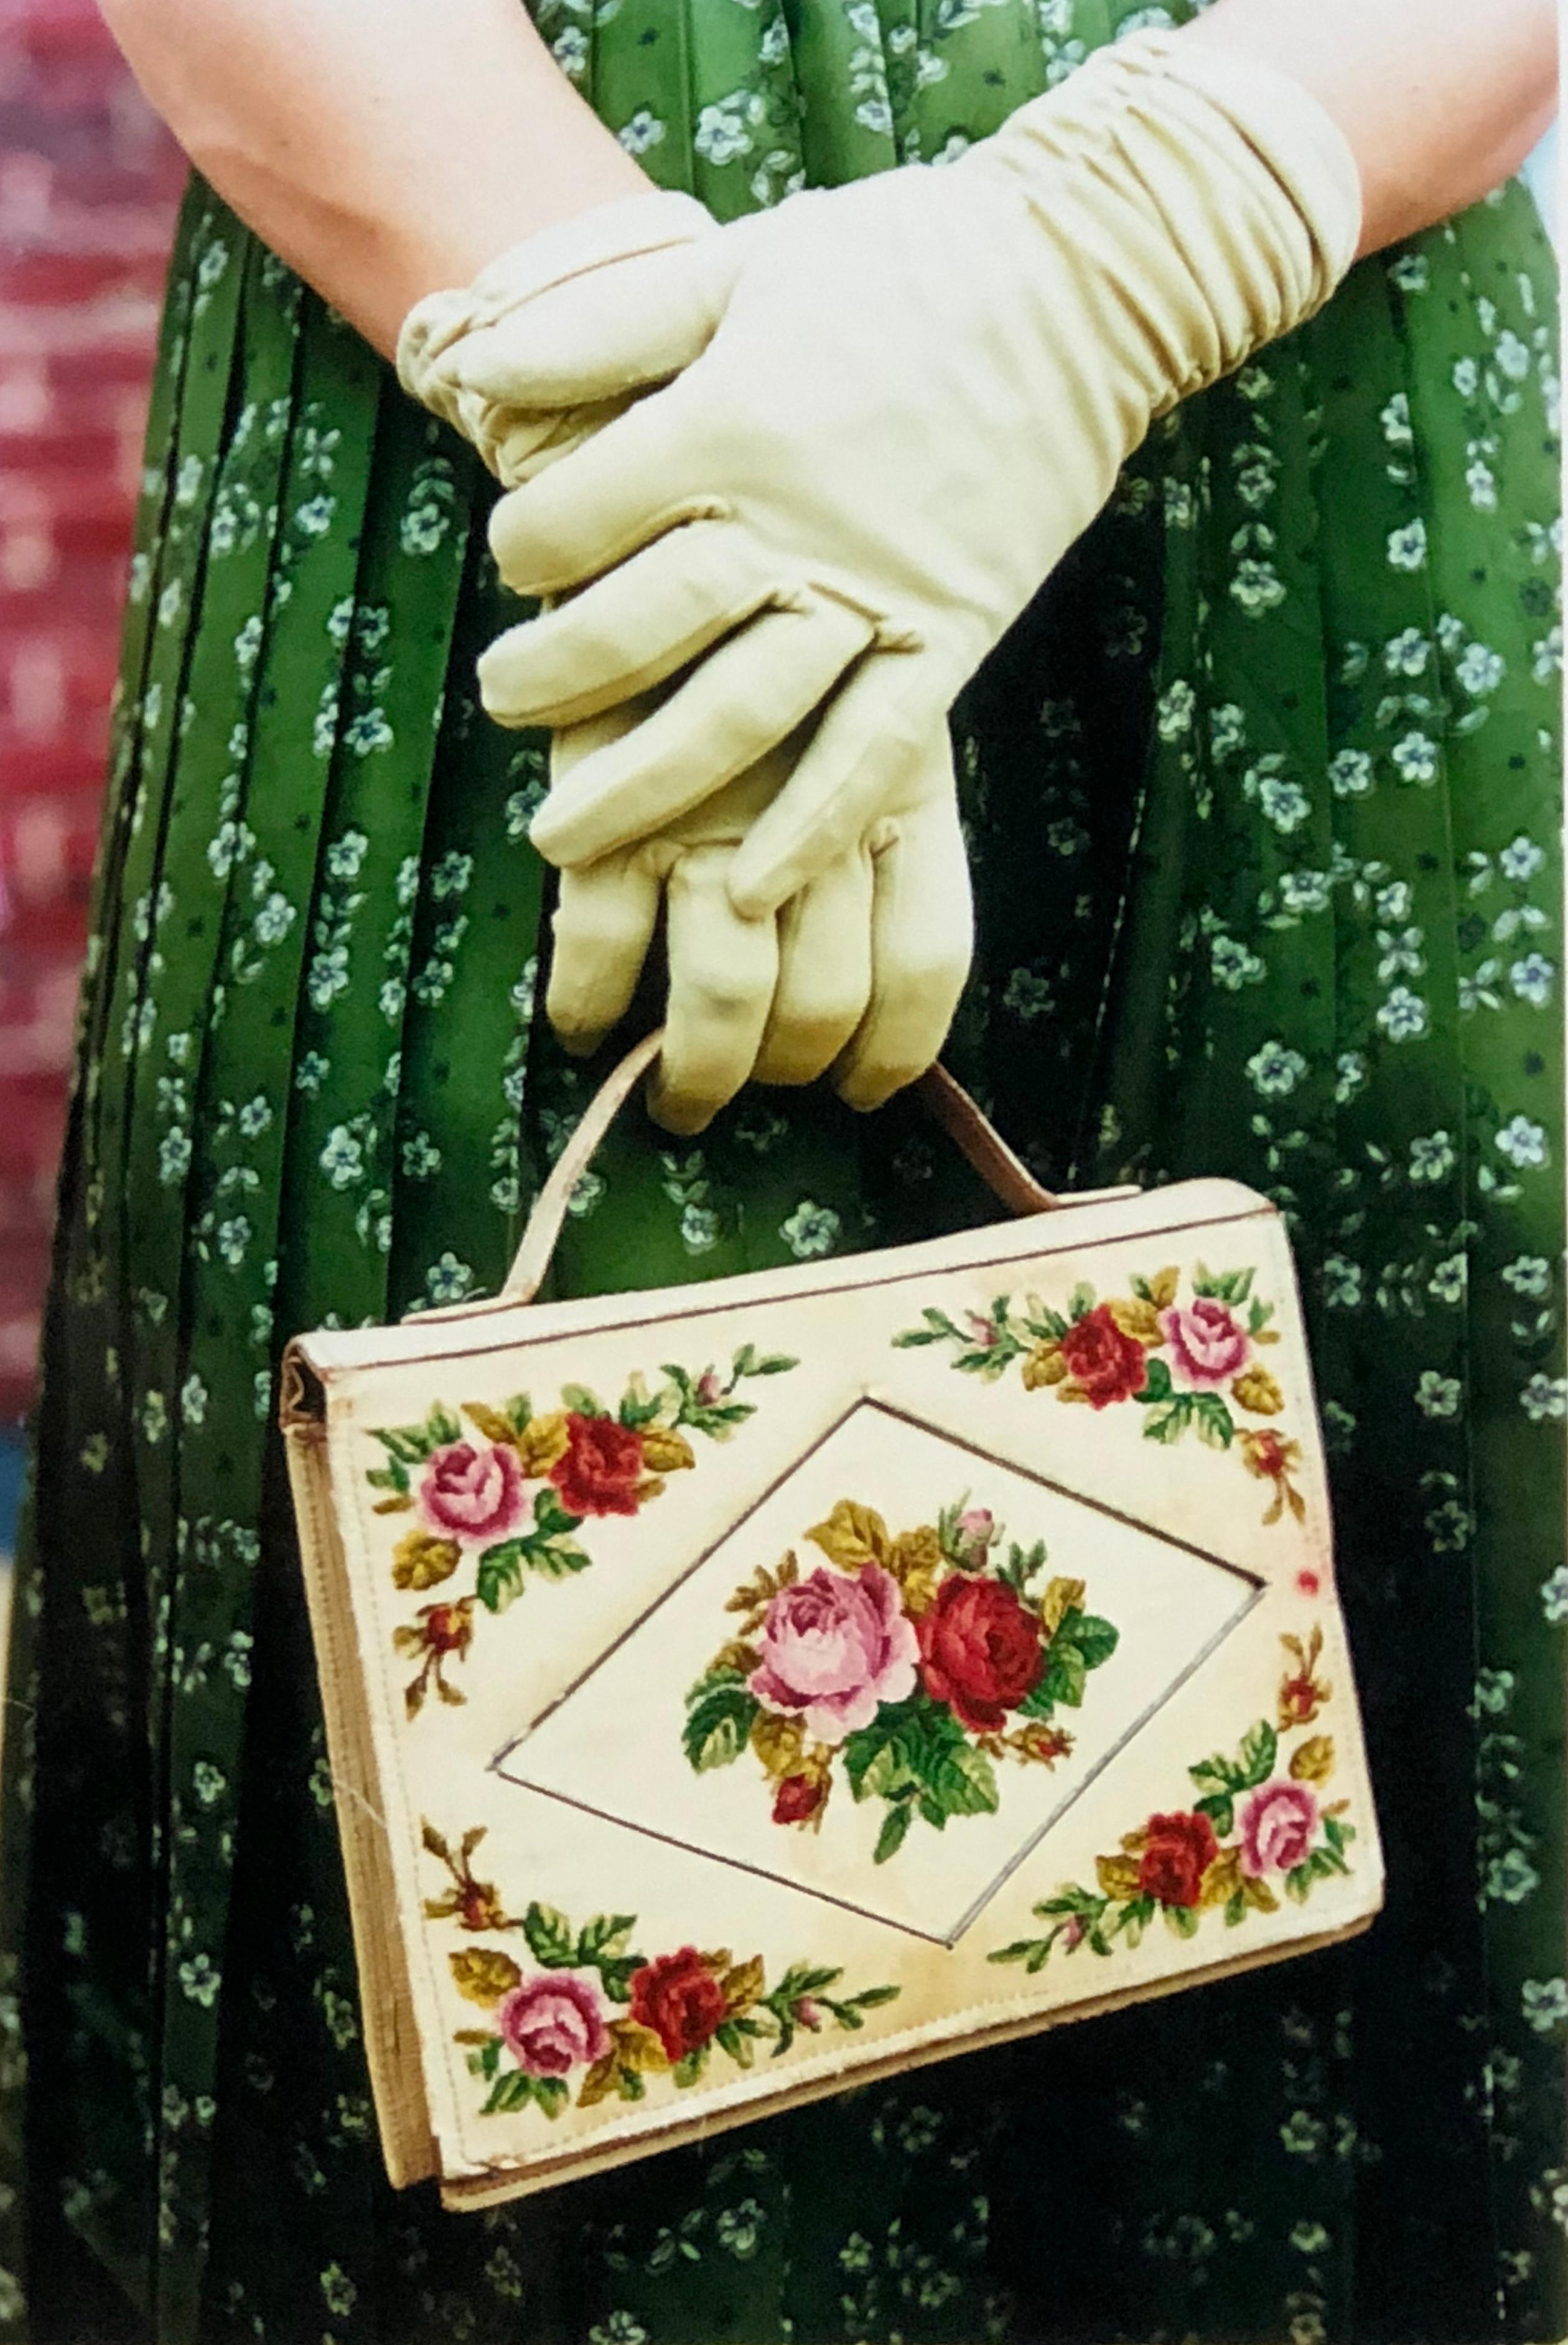 Gants et sac à main, Goodwood, Chichester - mode féminine, photographies en couleur